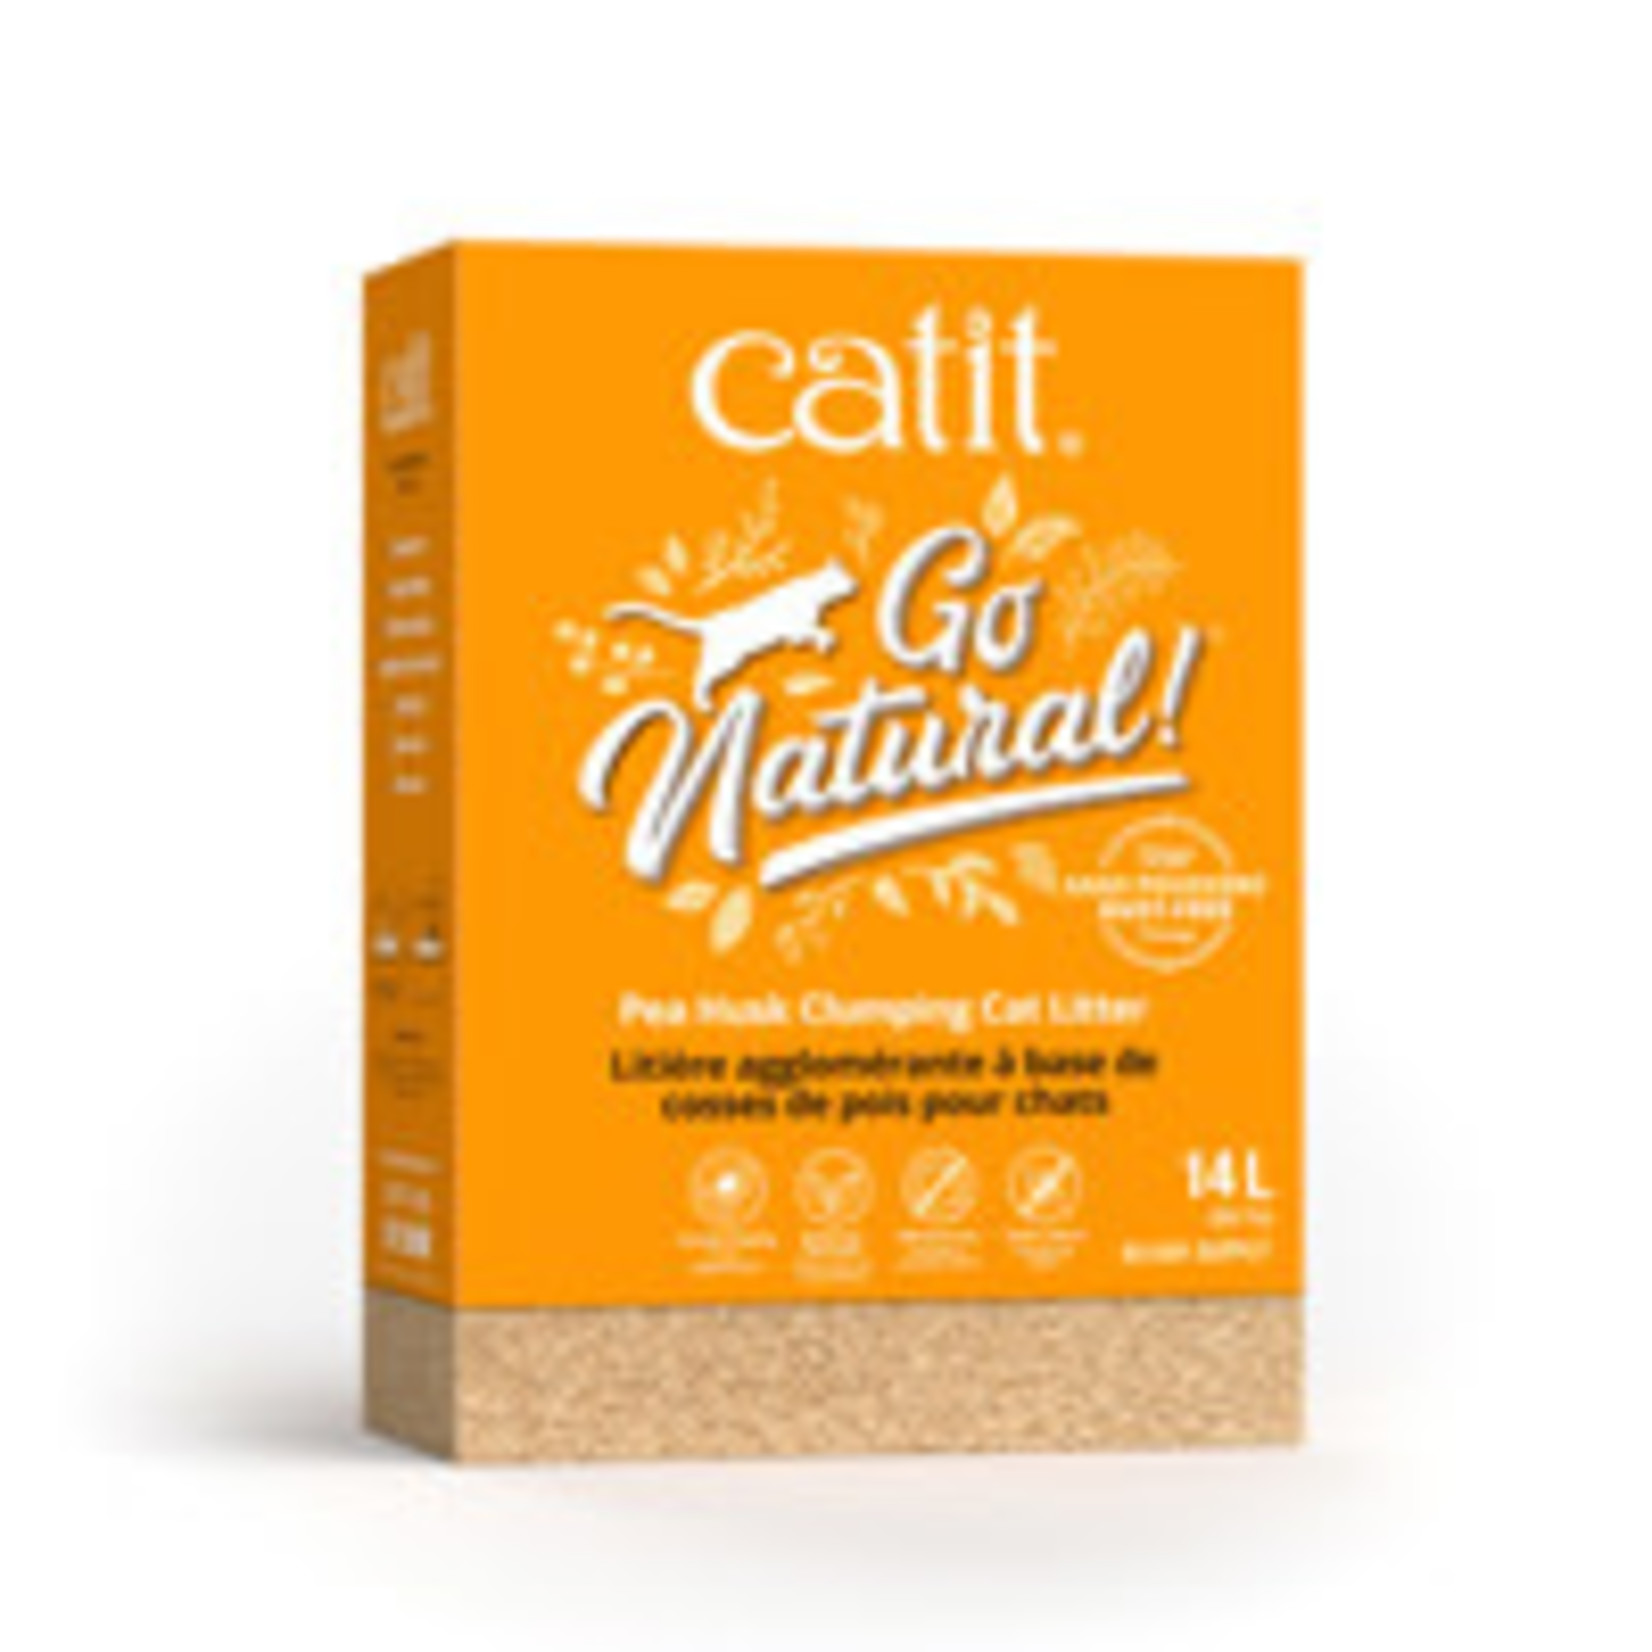 CATIT Catit Go Natural! Pea Husk Clumping Cat Litter - Vanilla - 14 L box